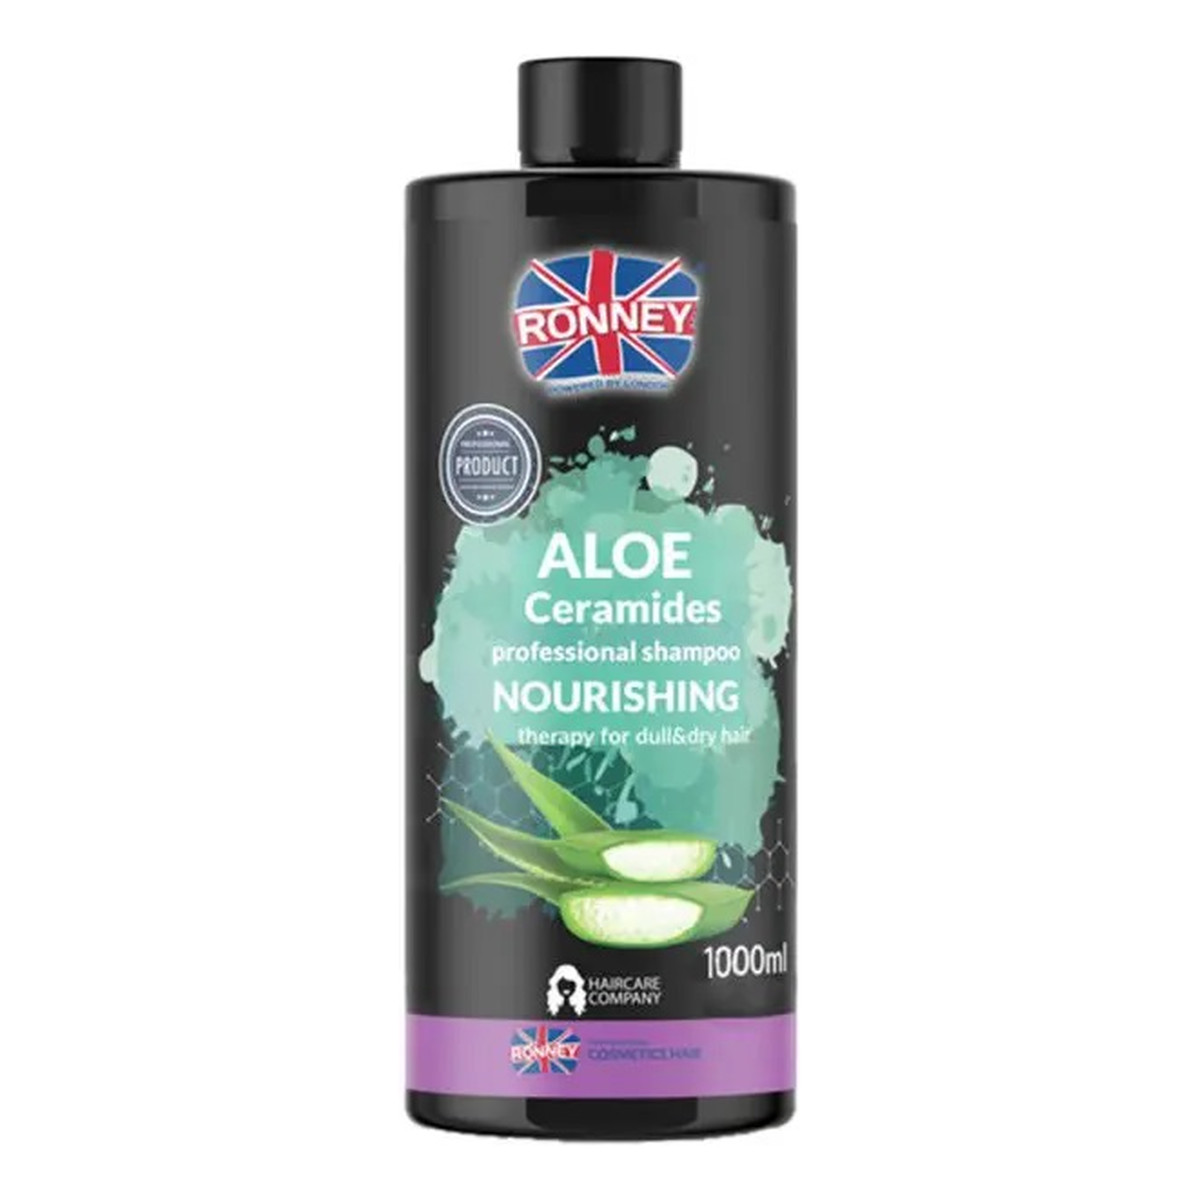 Ronney Aloe ceramides professional shampoo nourishing nawilżający szampon do włosów suchych i matowych 1000ml